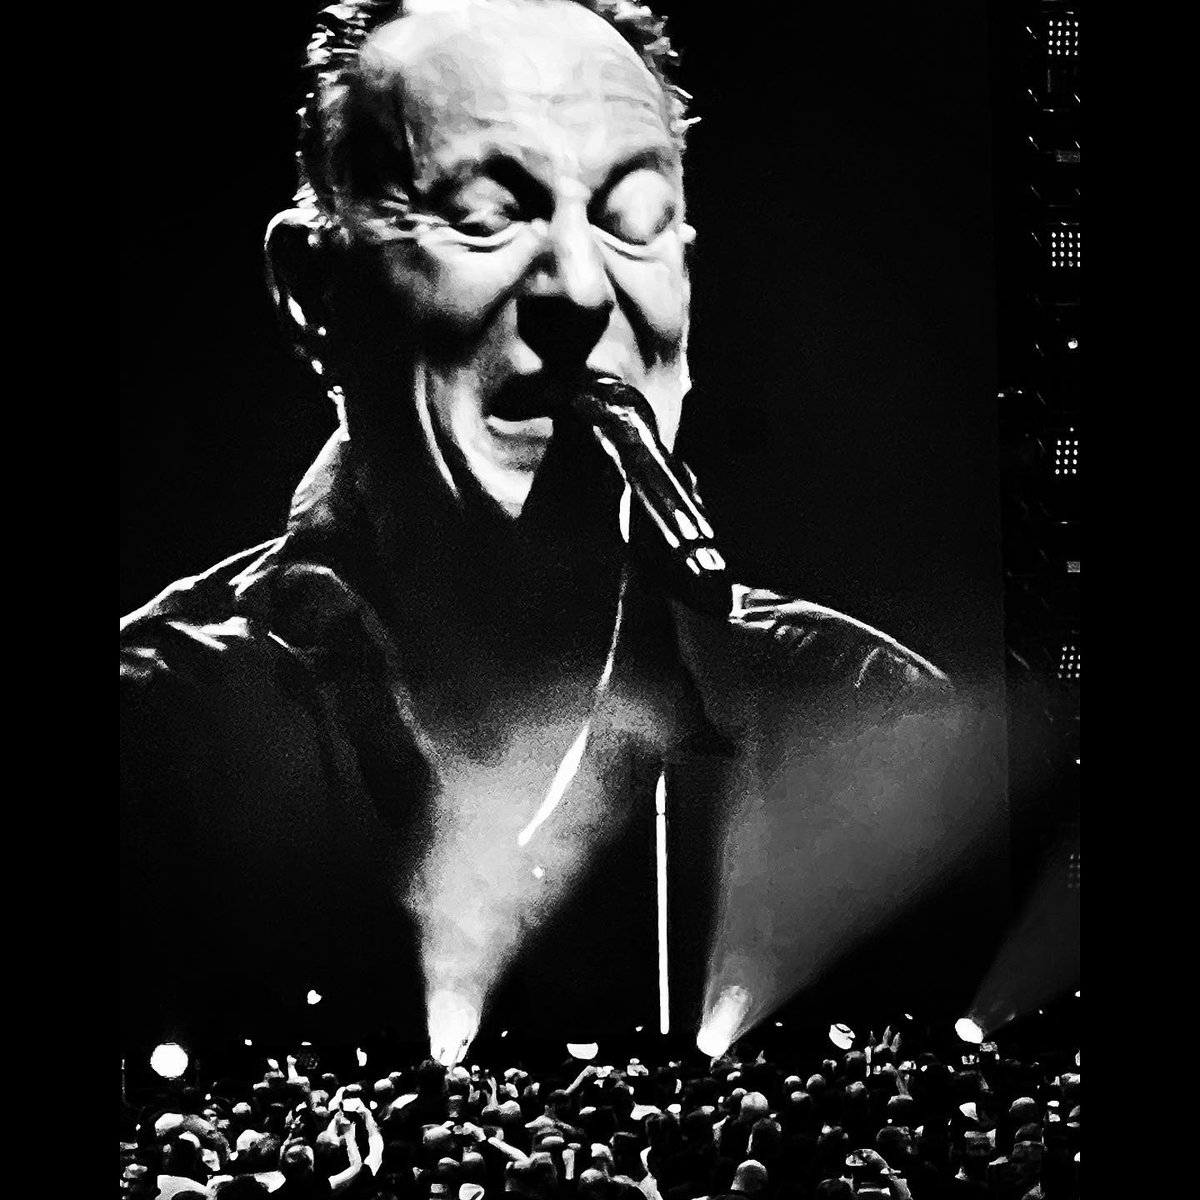 ‘The Boss’ performance @johancruijffarena #photo ©️VM2023 Thank so much for the wonderful evening @springsteen & @TimBroas #vincentmentzelphotography #music #rocknroll #brucespringsteen #pop #concert